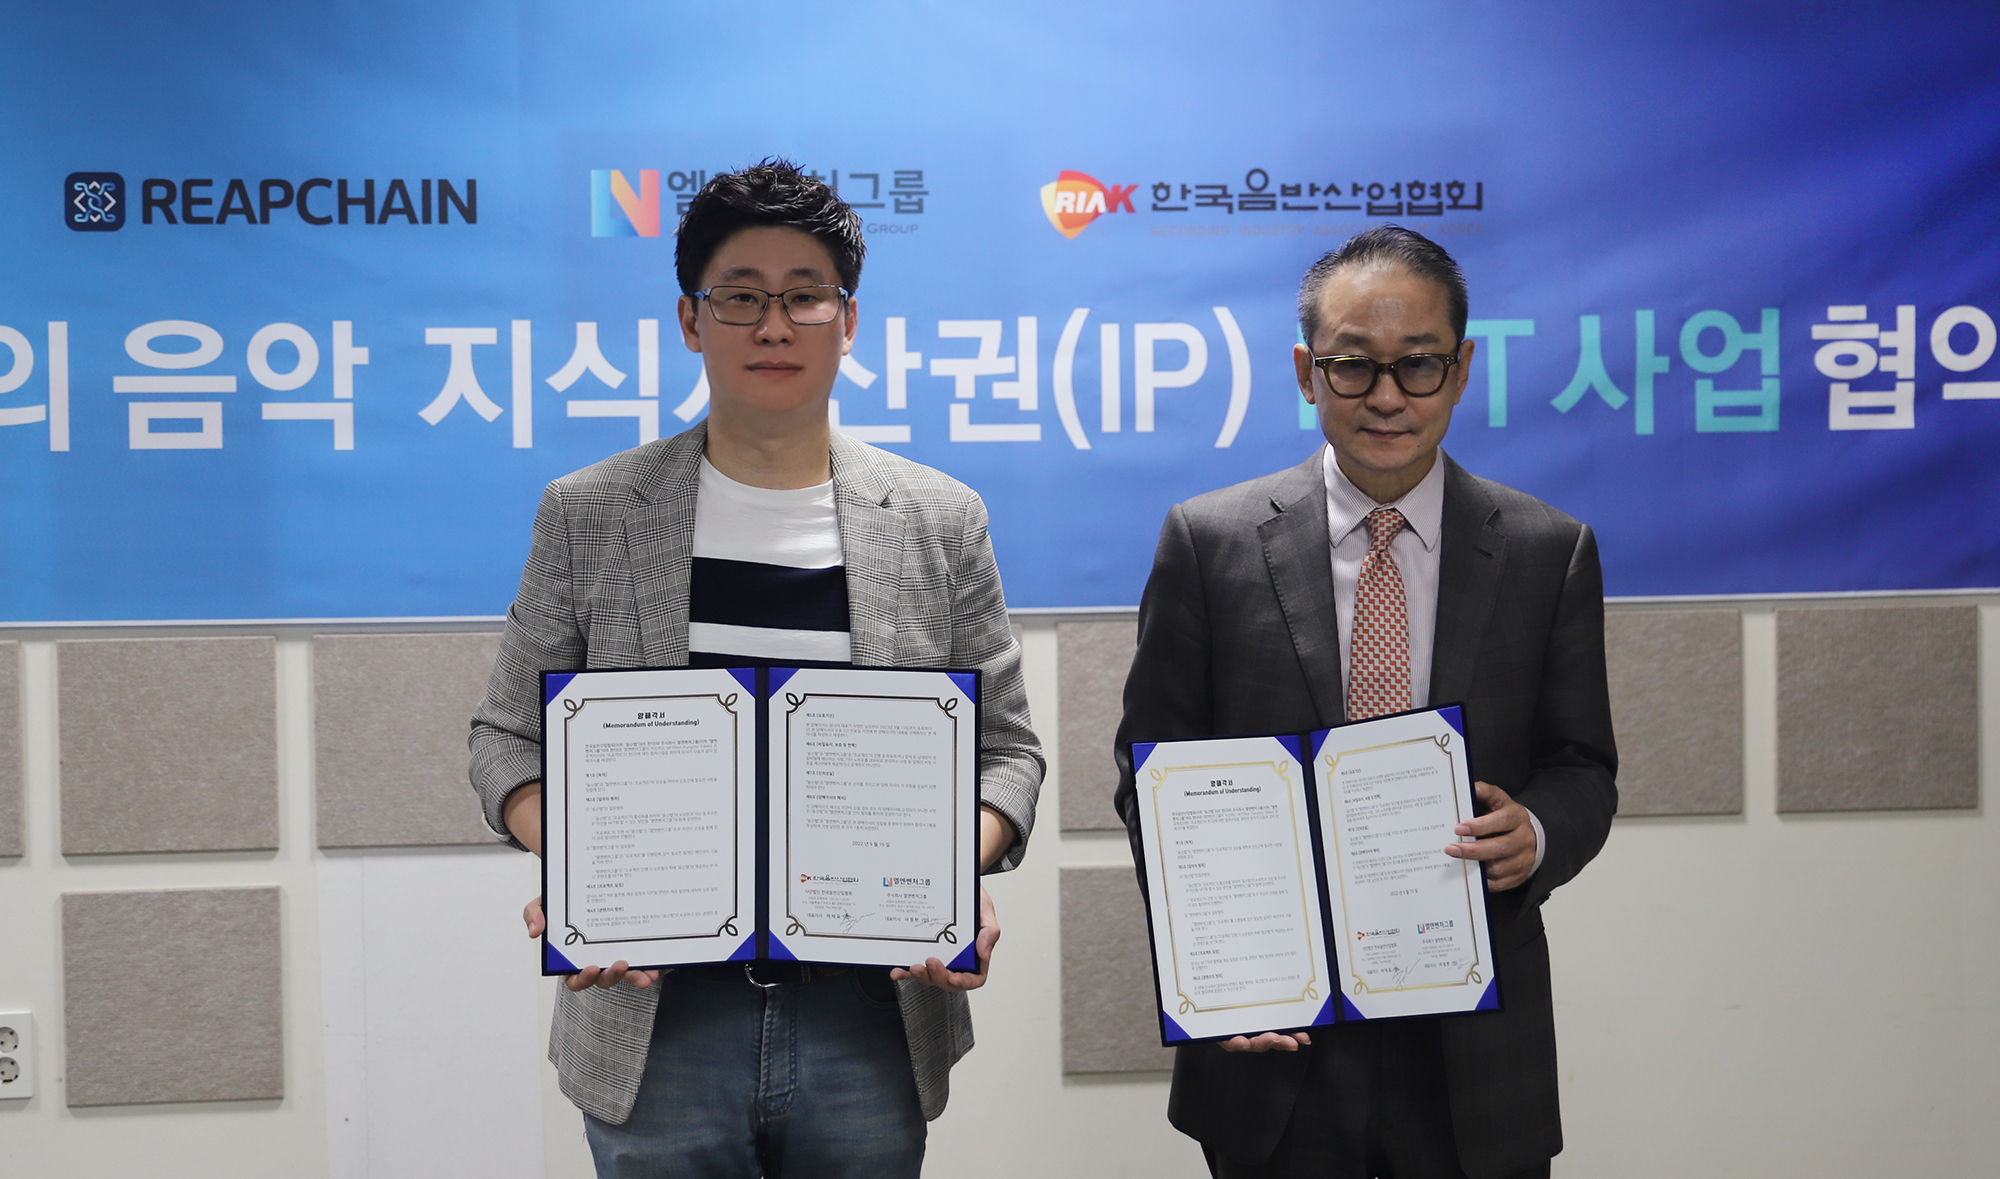 립체인, 한국음반산업협회와 NFT 사업 업무 협약 체결